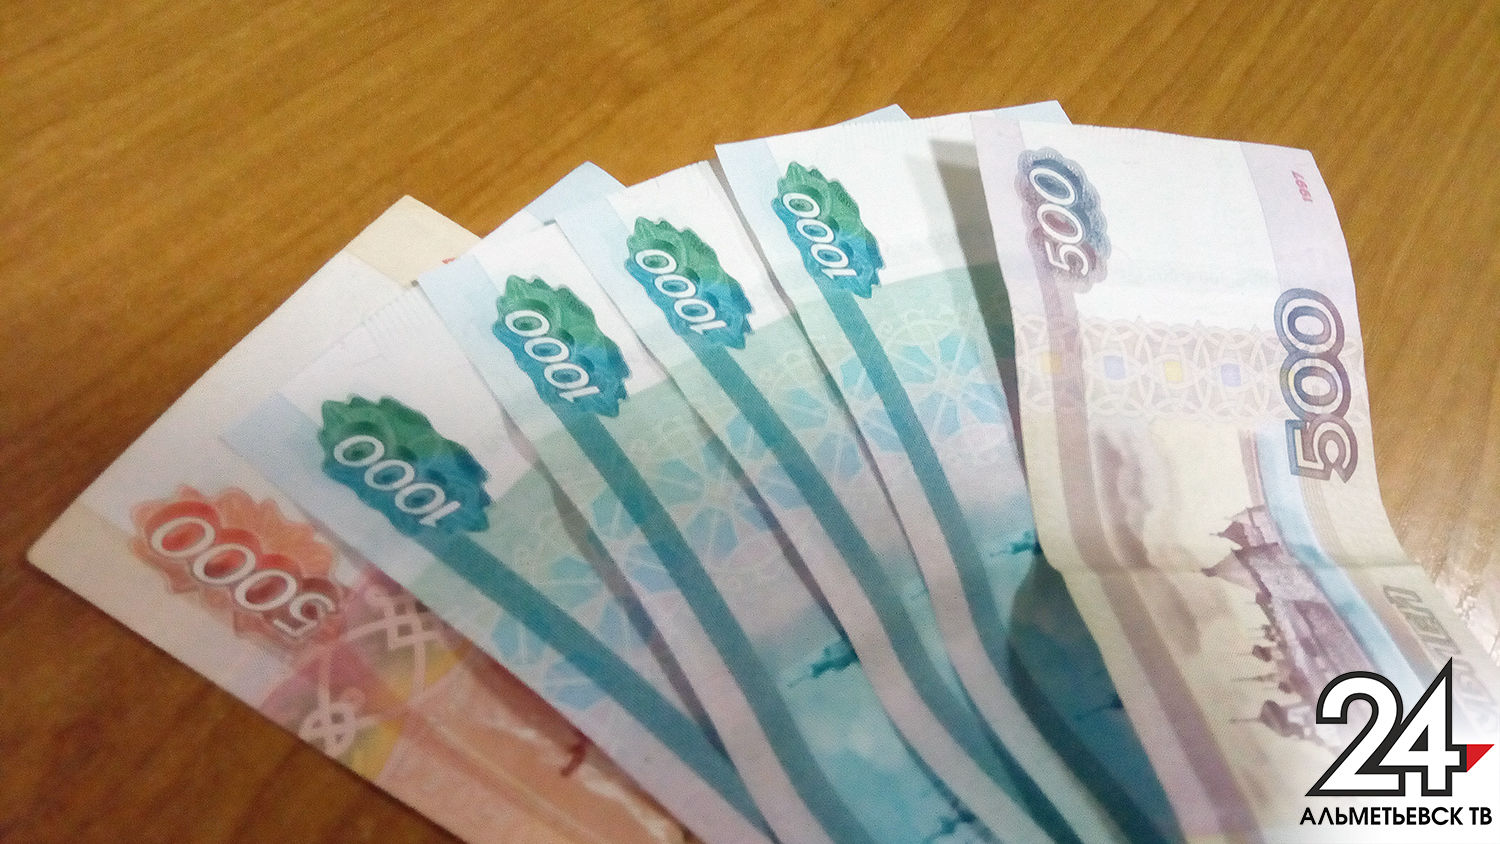 Супружеская пара в Альметьевске поверила мошенникам и лишилась более 700 тыс. рублей